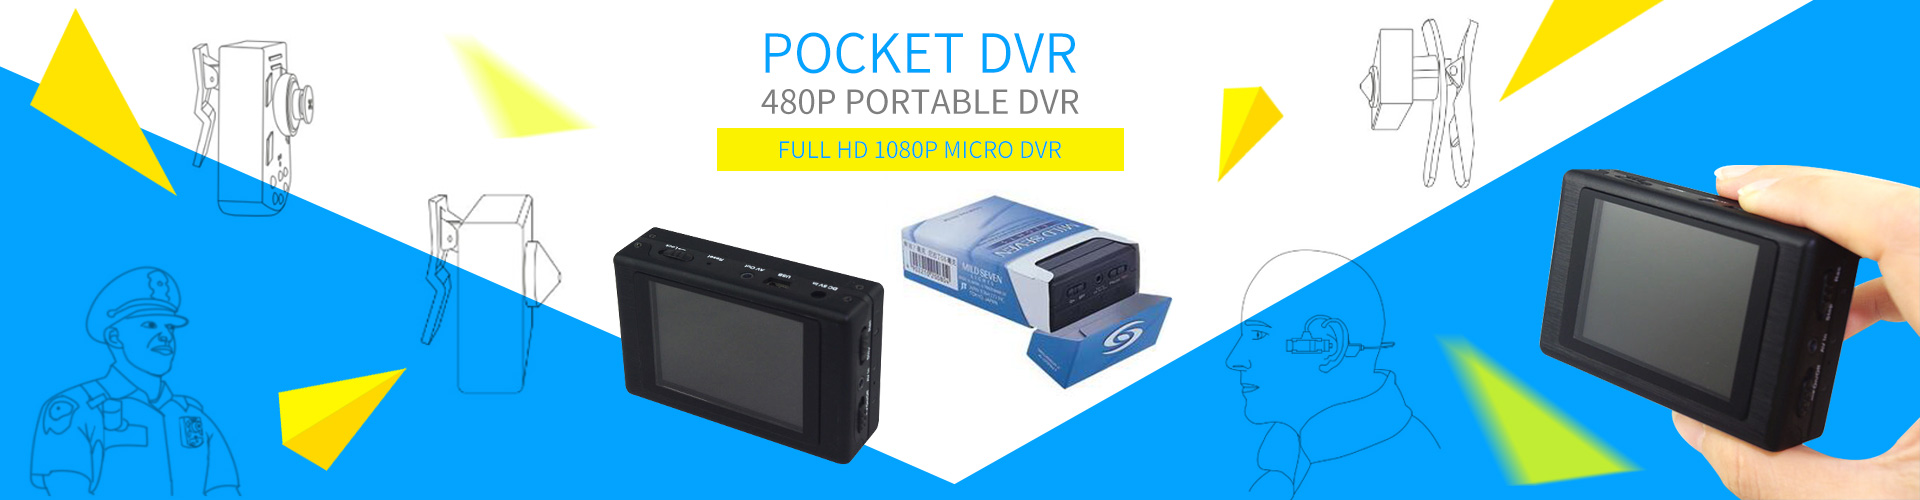 pocket DVR PV007 V4